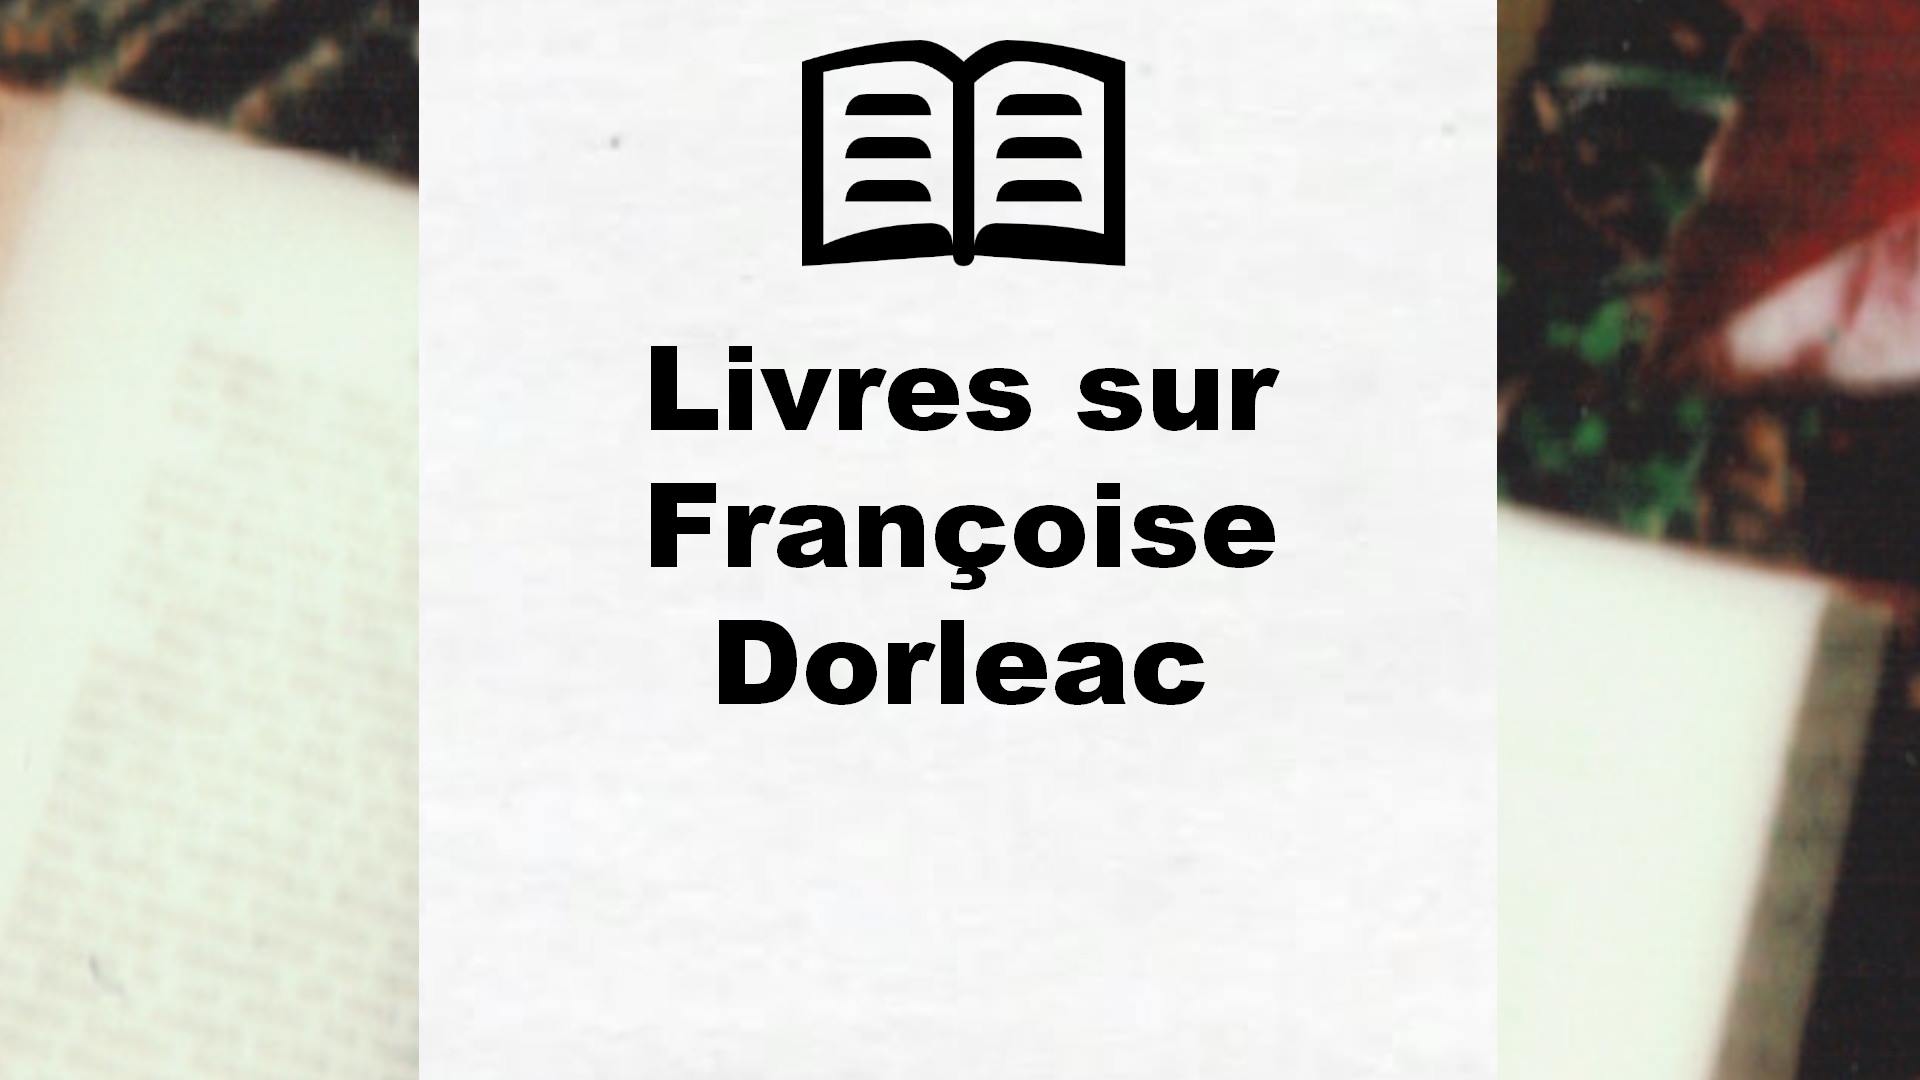 Livres sur Françoise Dorleac